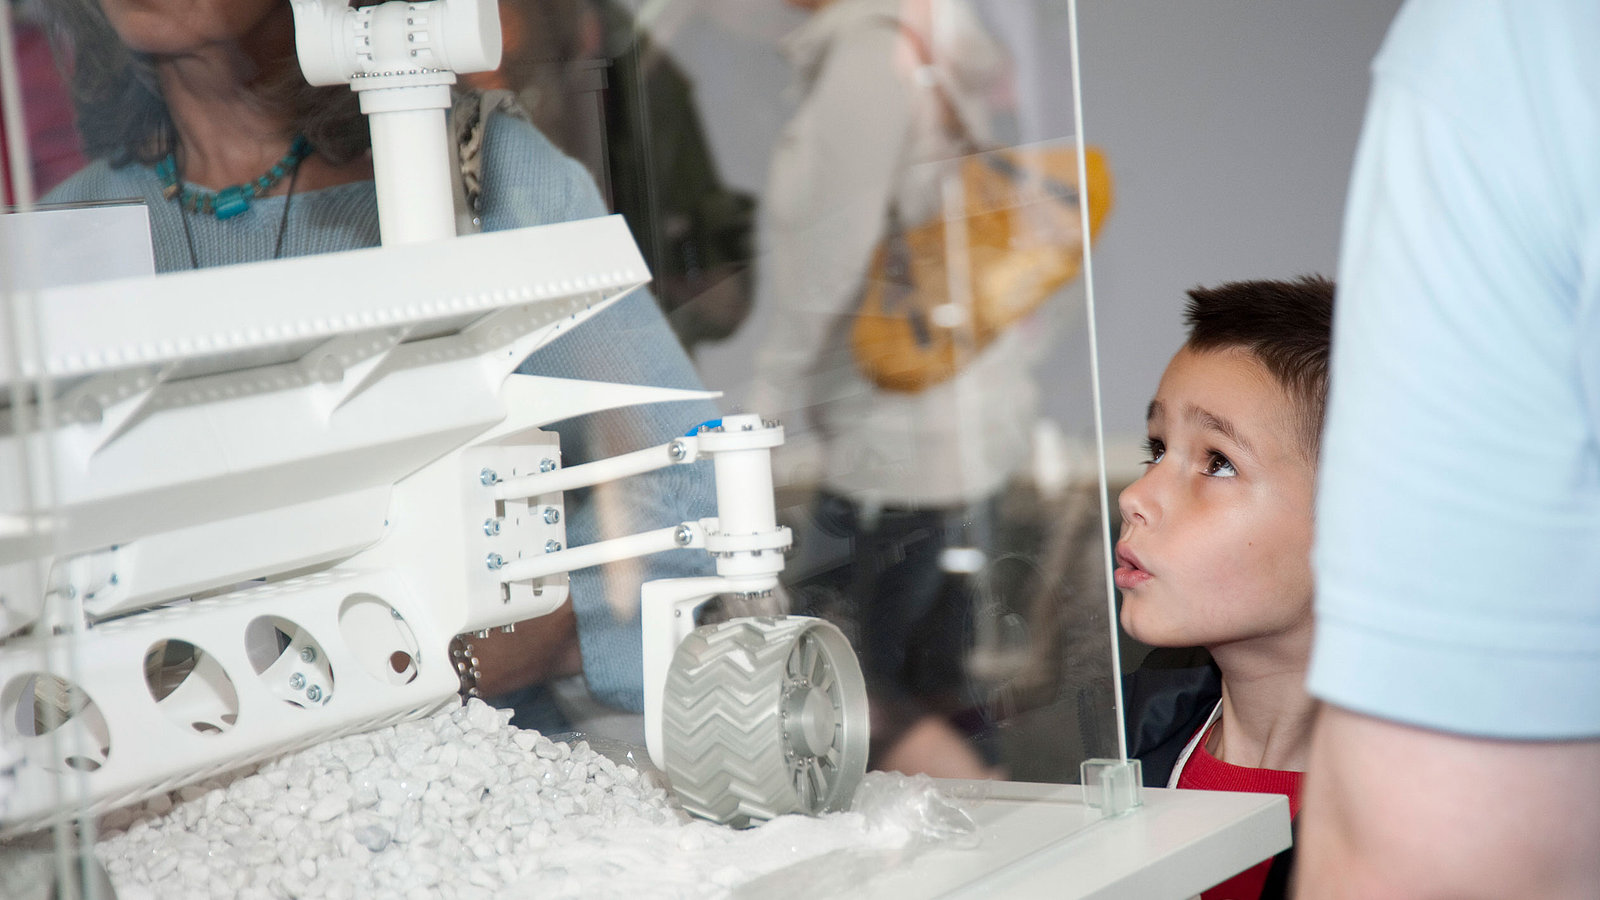 Besucher besichtigen die Mondmission "Part Time Scientist"